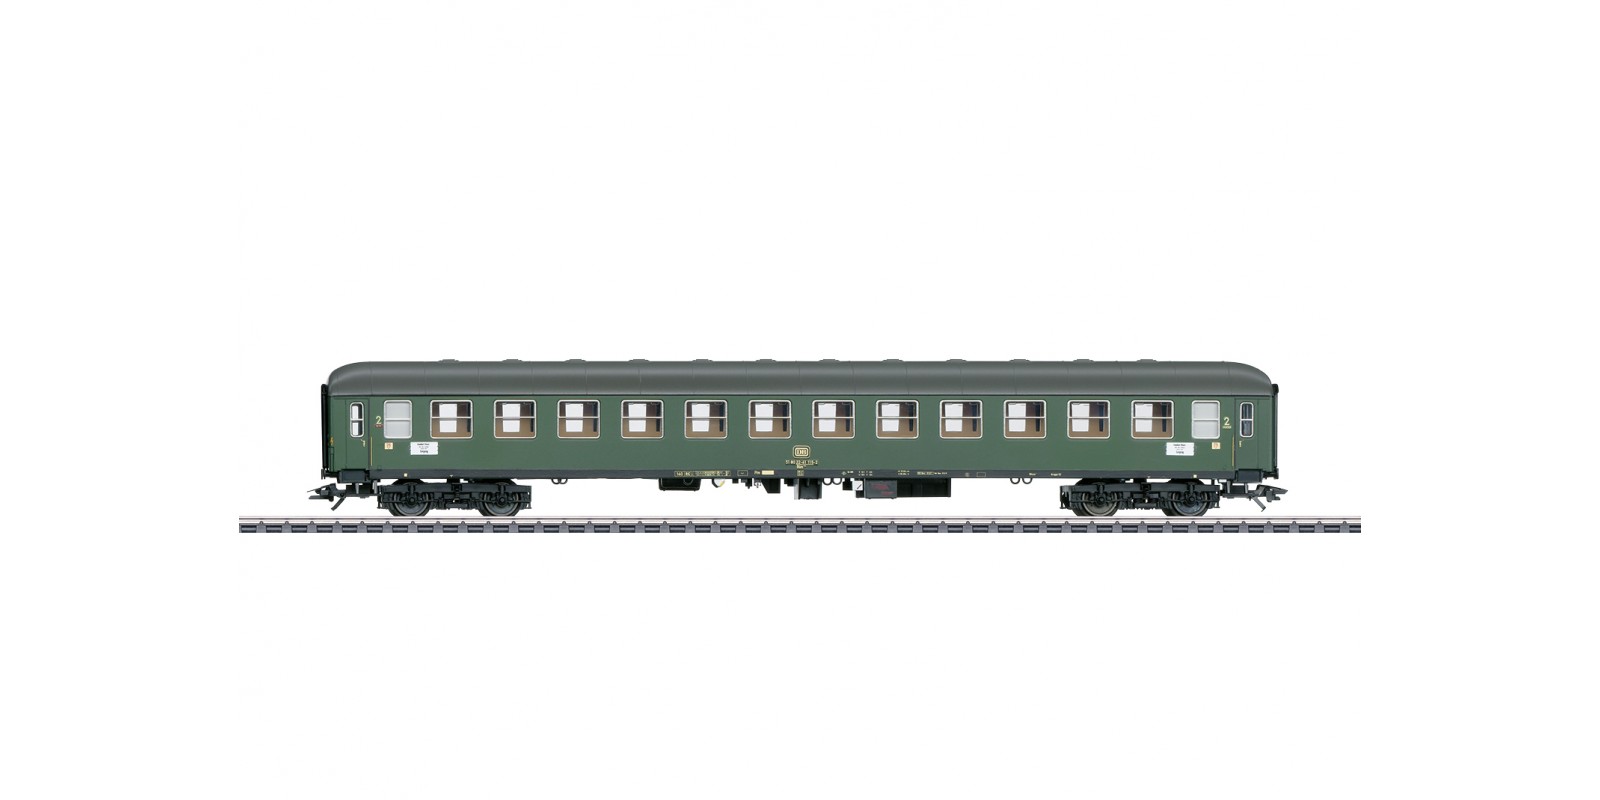 43907 Type Büm 234 Express Train Passenger Car